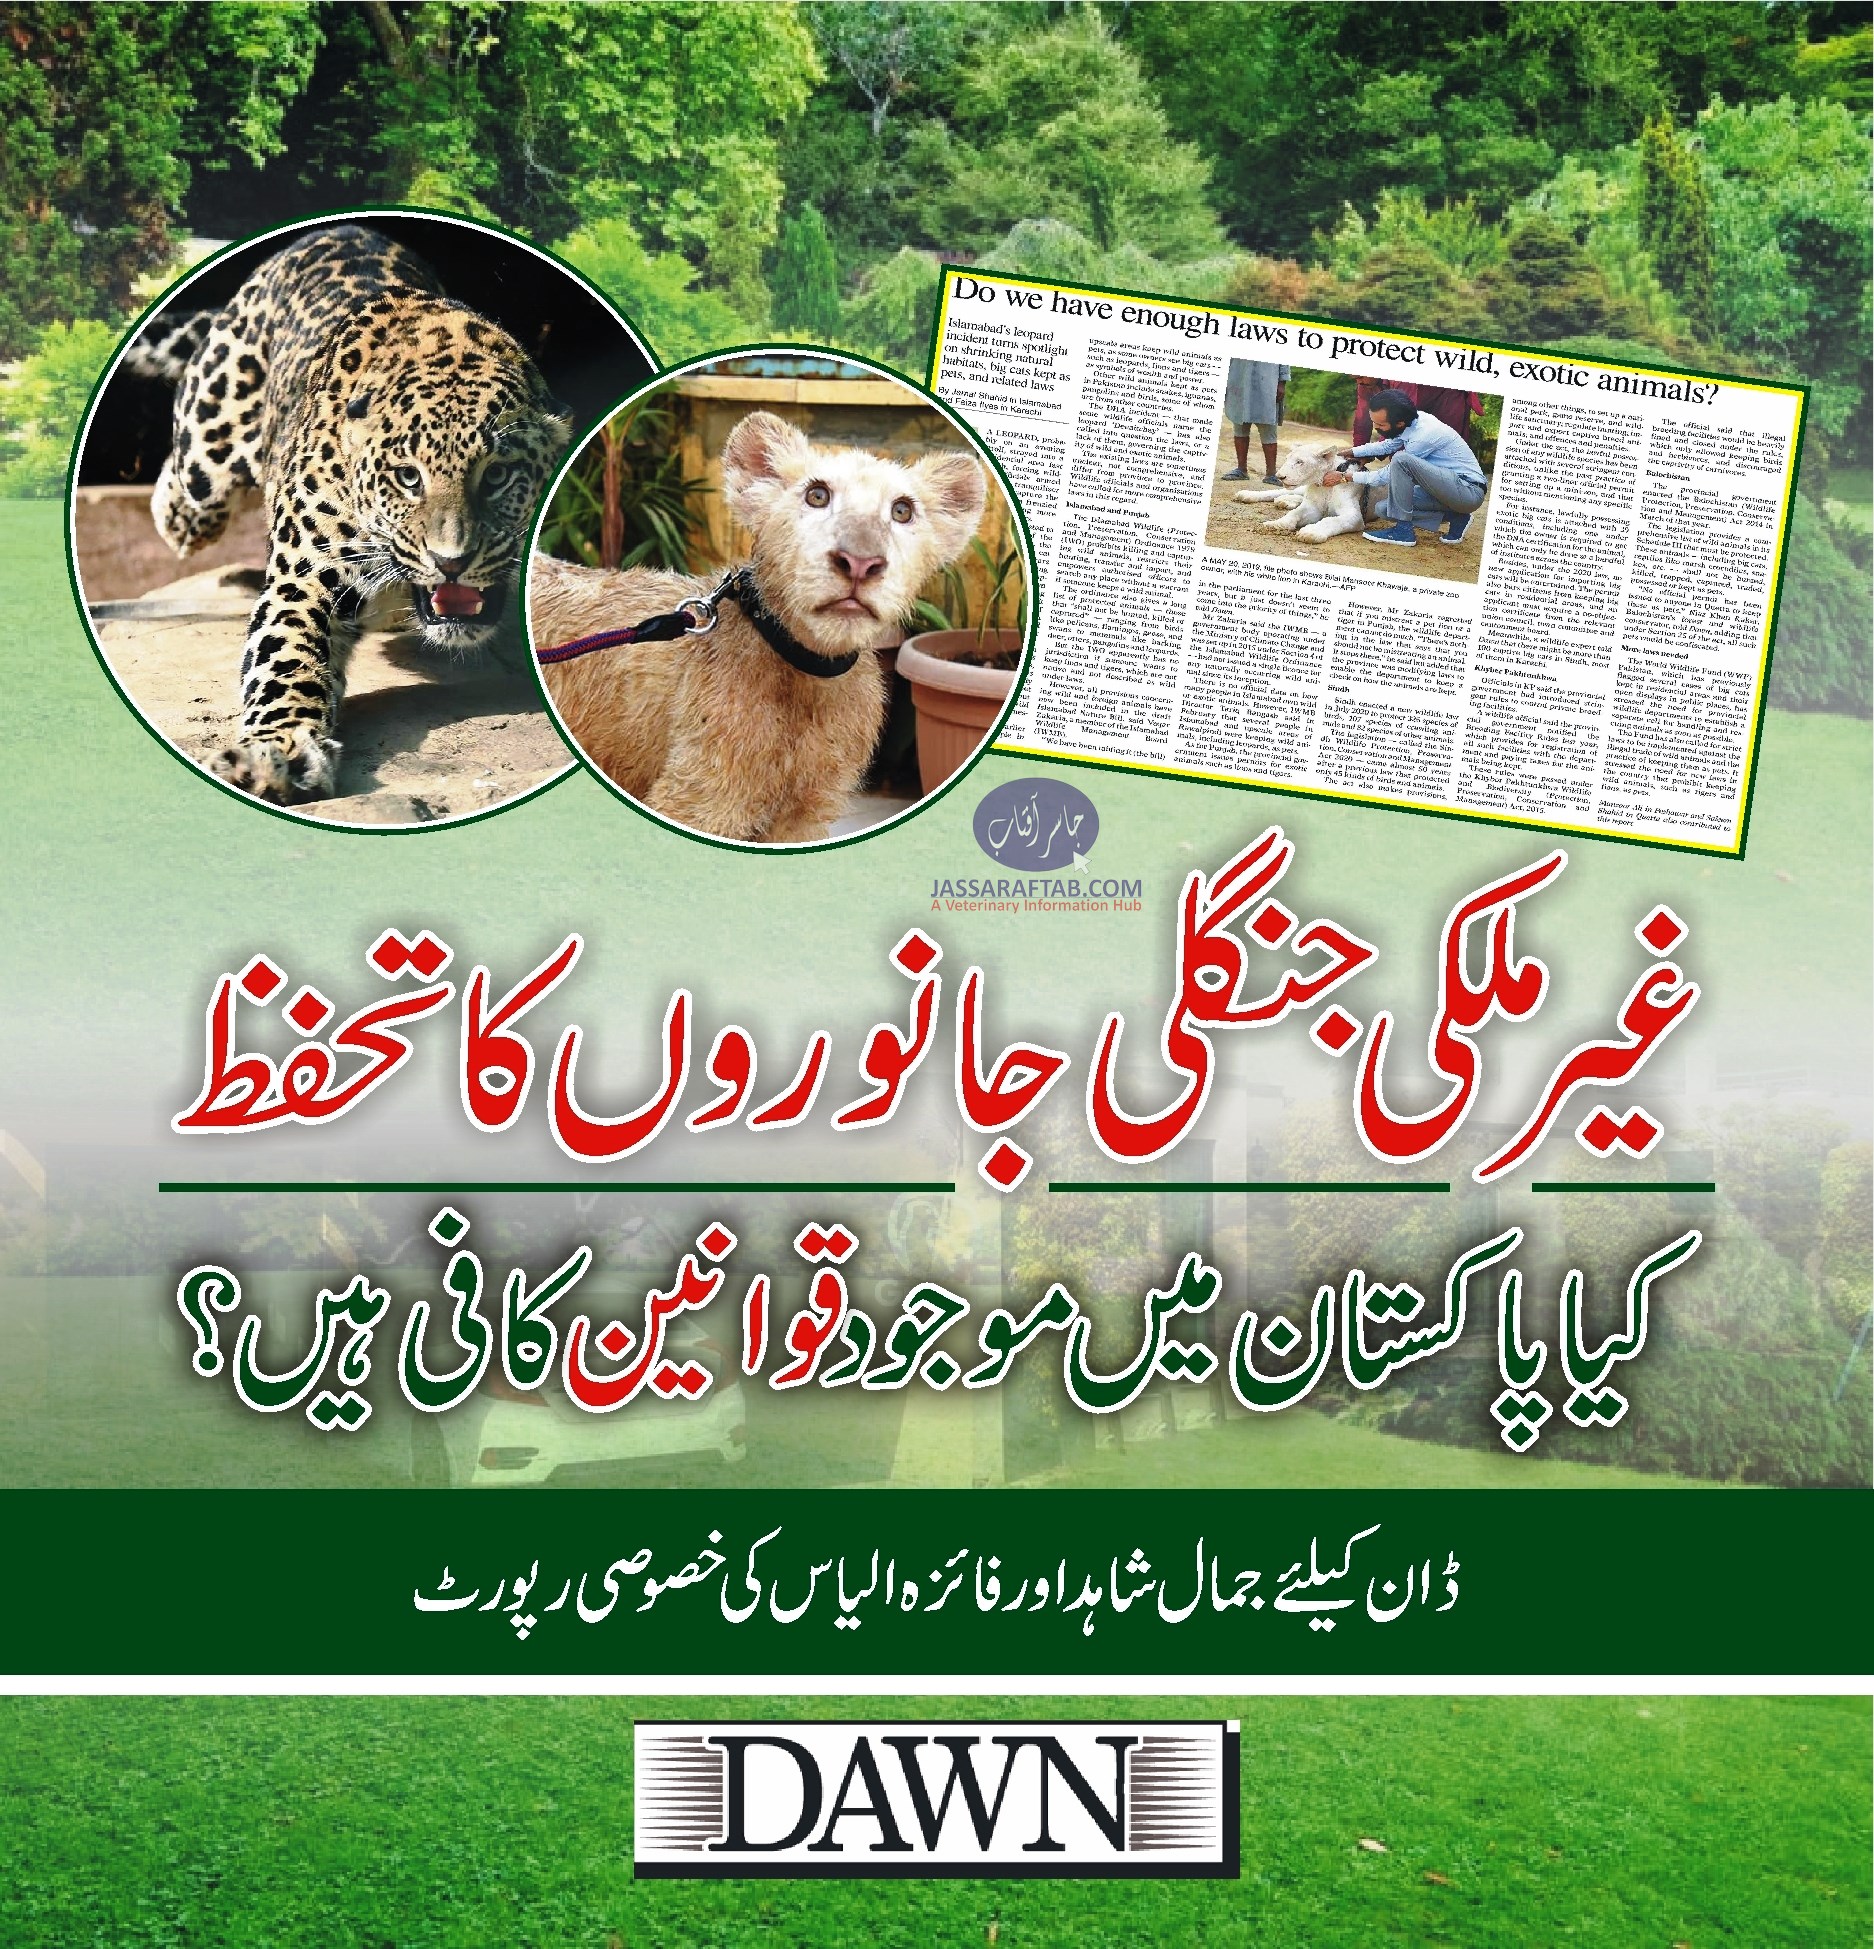 غیر ملکی جانوروں کا تحفظ ، کیا پاکستان میں موجود قوانین کافی ہیں؟،خصوصی رپورٹ